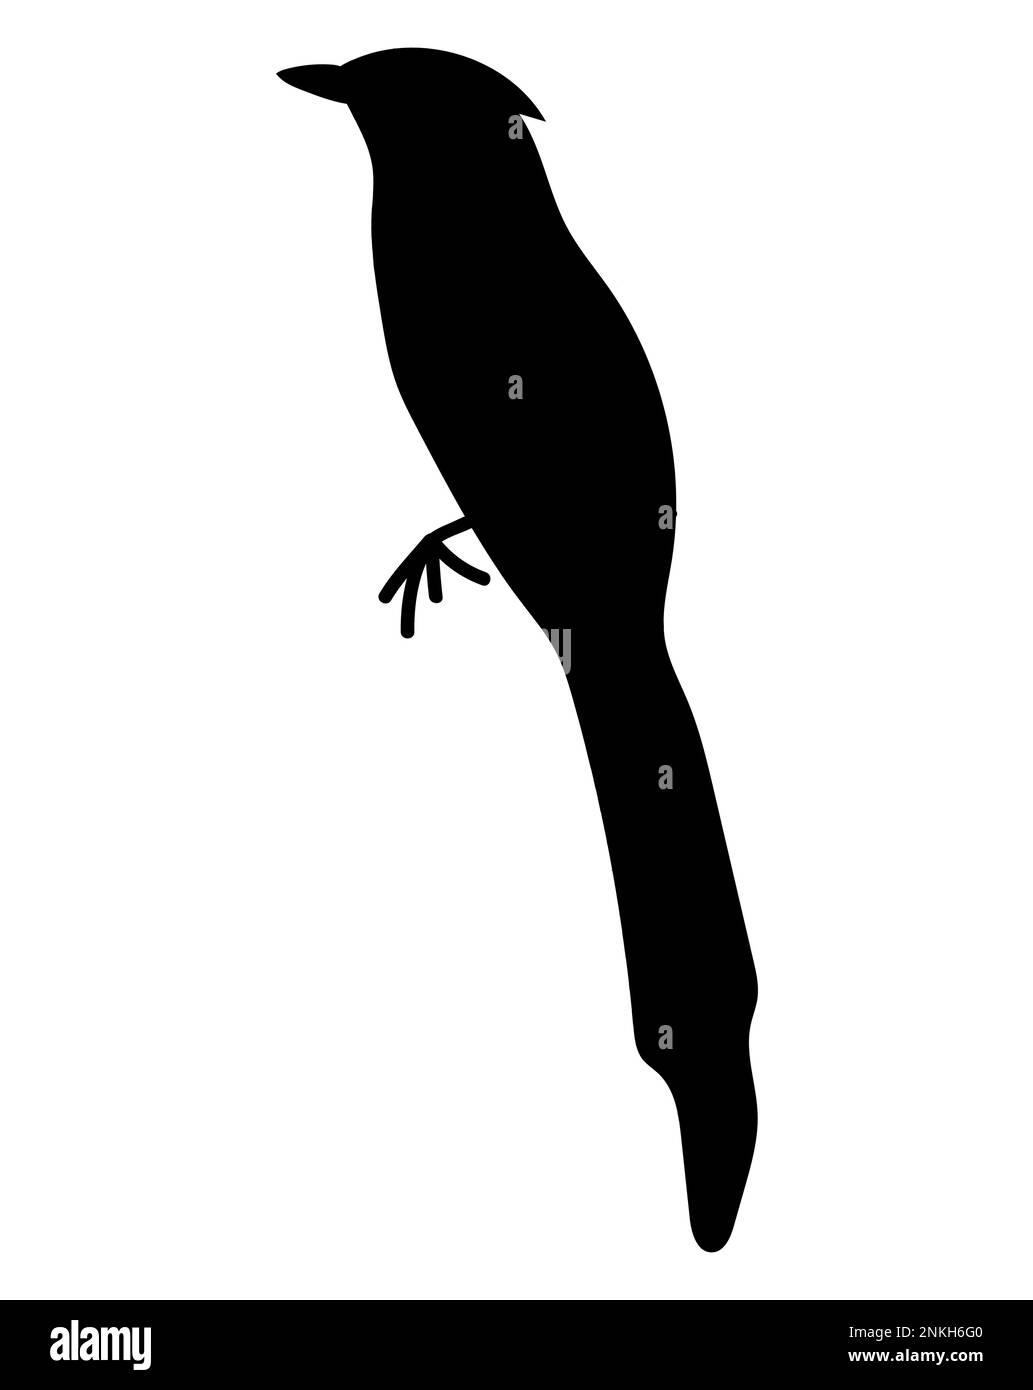 Black silhouette of a Murai bird illustration logo vector, Cempala Kuneng bird, Aceh Indonesian, icon Stock Vector